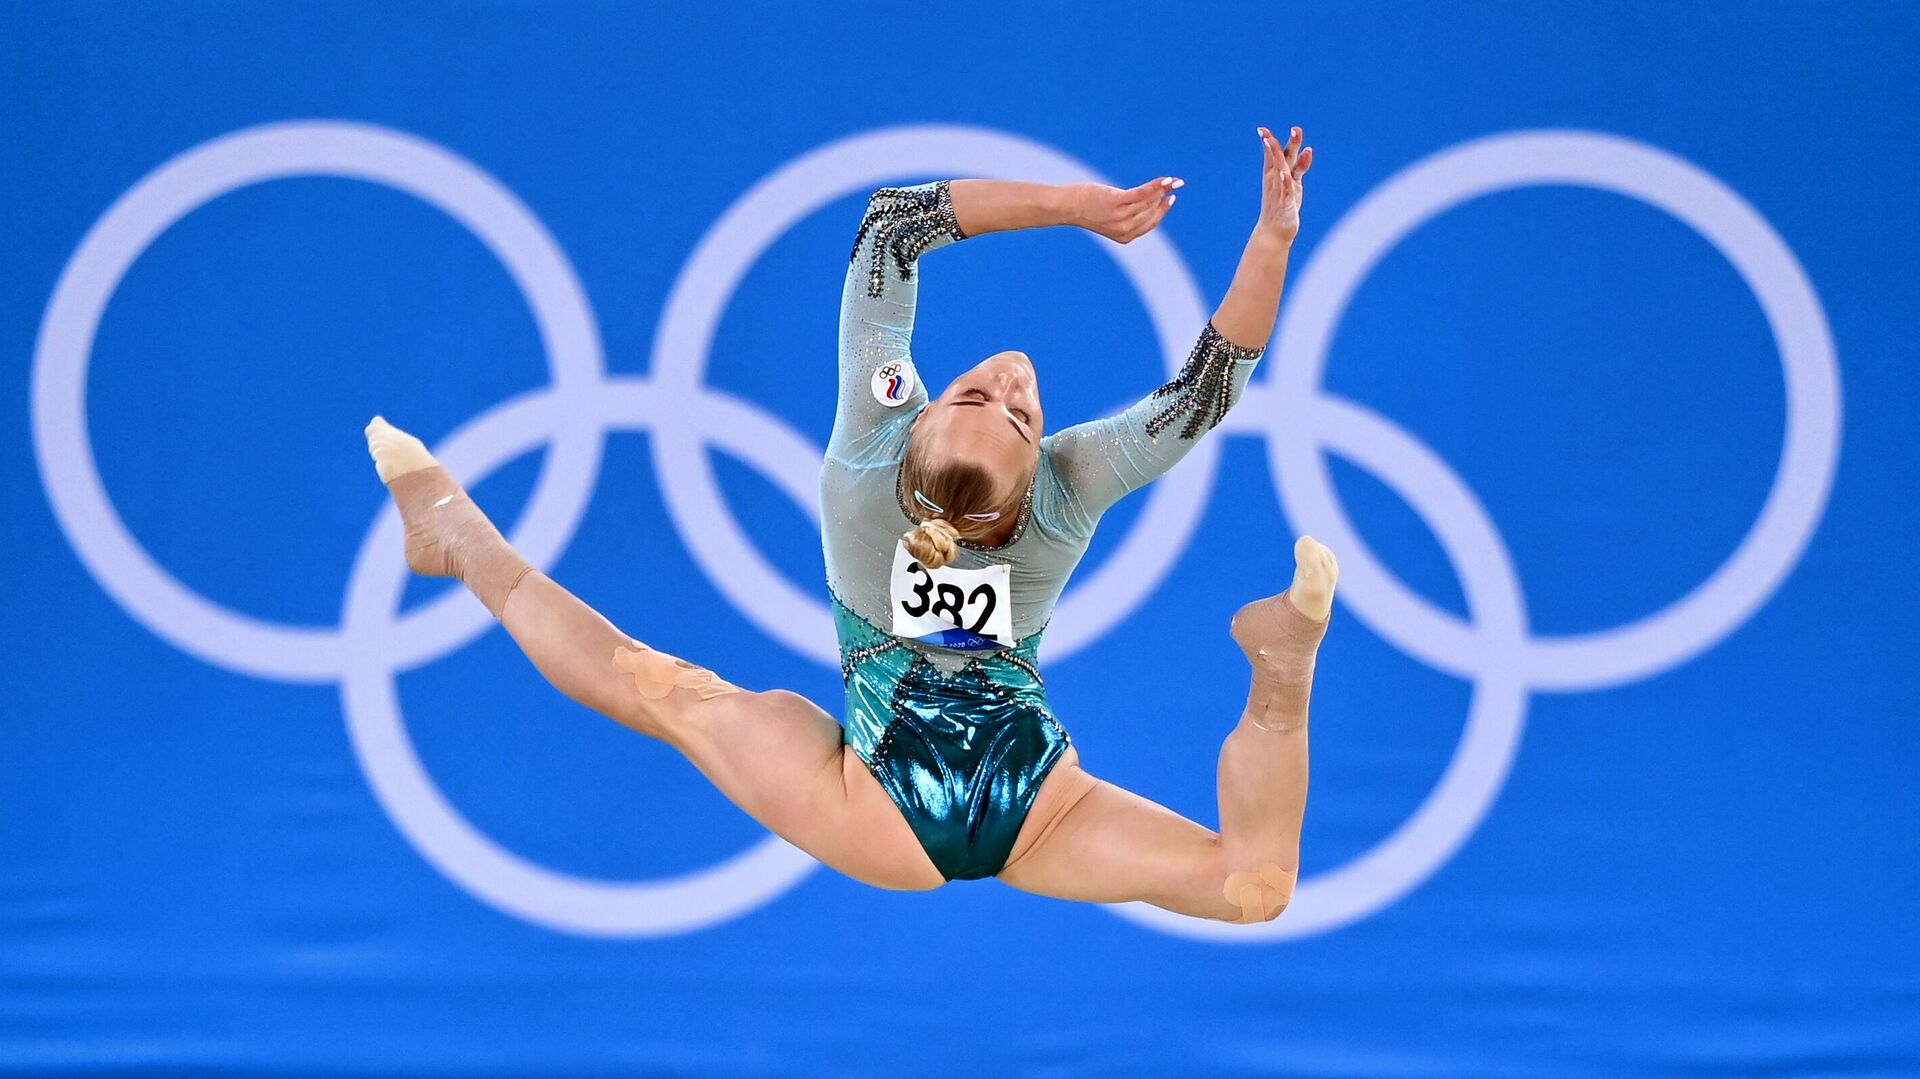 Ruska gimnastičarka Angelina Meljnikova na Olimpijskim igrama u Tokiju 2021. - Sputnik Srbija, 1920, 28.10.2021